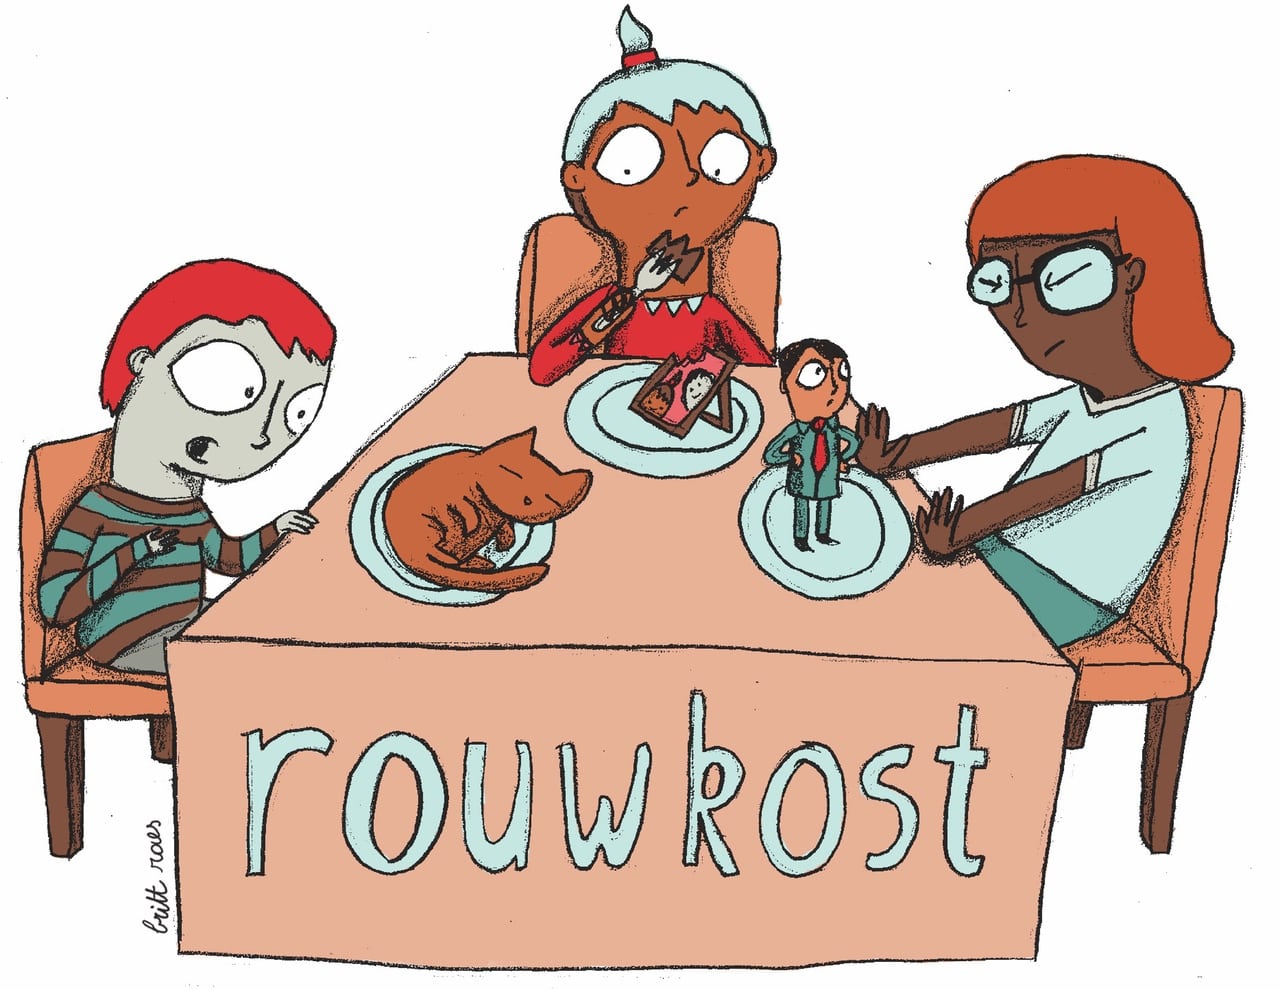 Illustratie door Britt Raes waarin de woordspeling van Rouwkost uitgebeeld wordt. Drie mensen verteren hun verlies, op hun bord zie je een afbeelding van de persoon of het dier waar ze om rouwen.